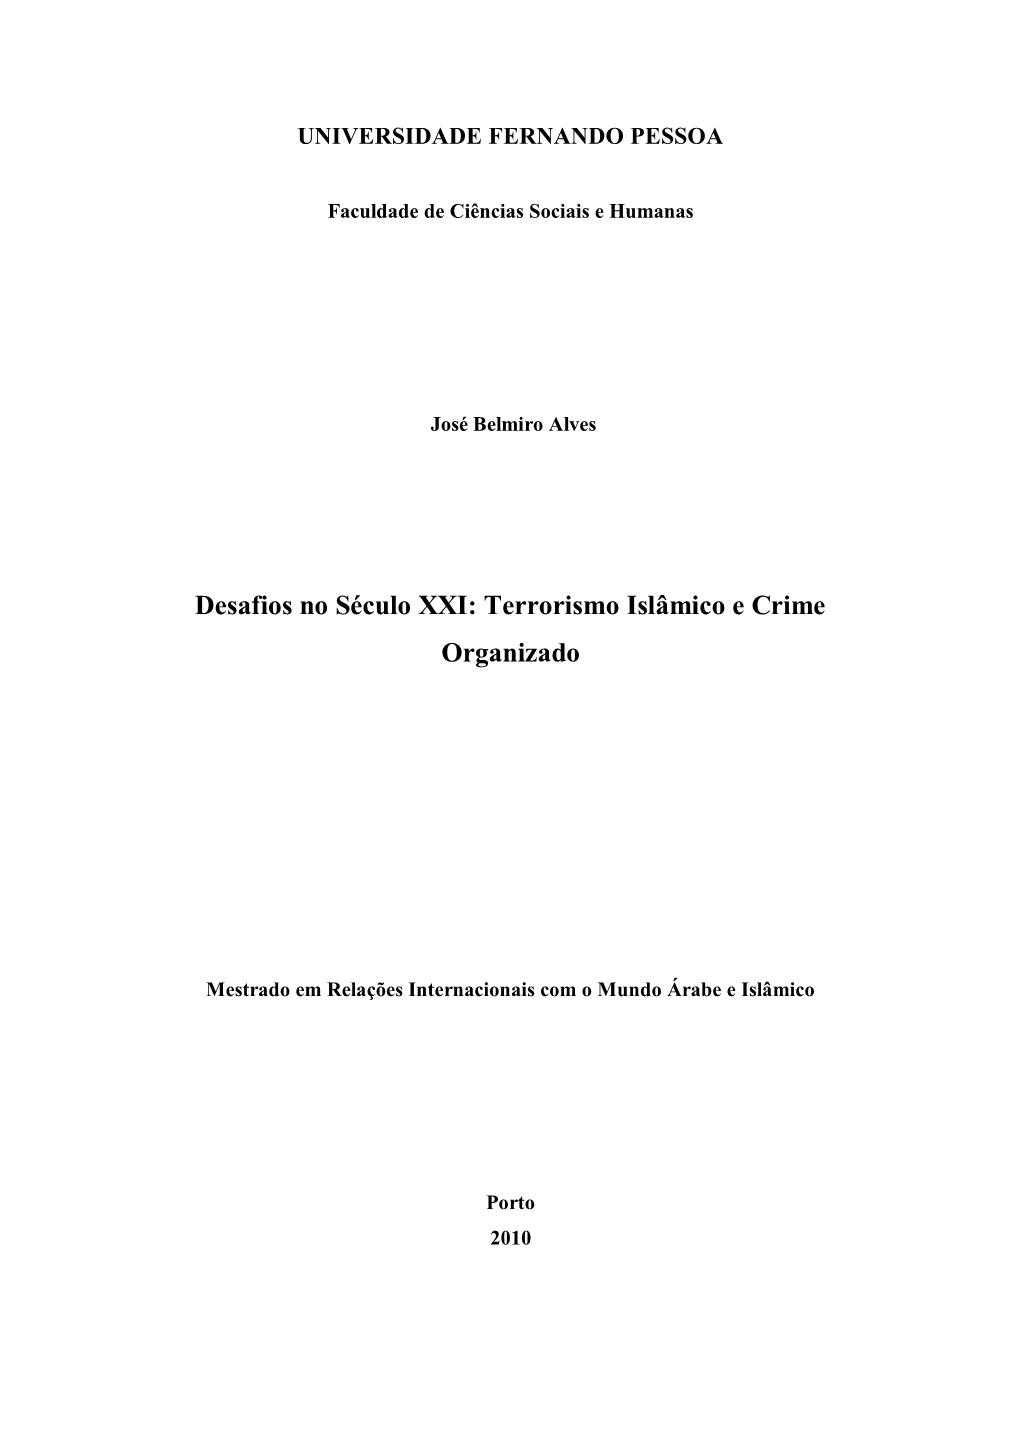 Desafios No Século XXI: Terrorismo Islâmico E Crime Organizado